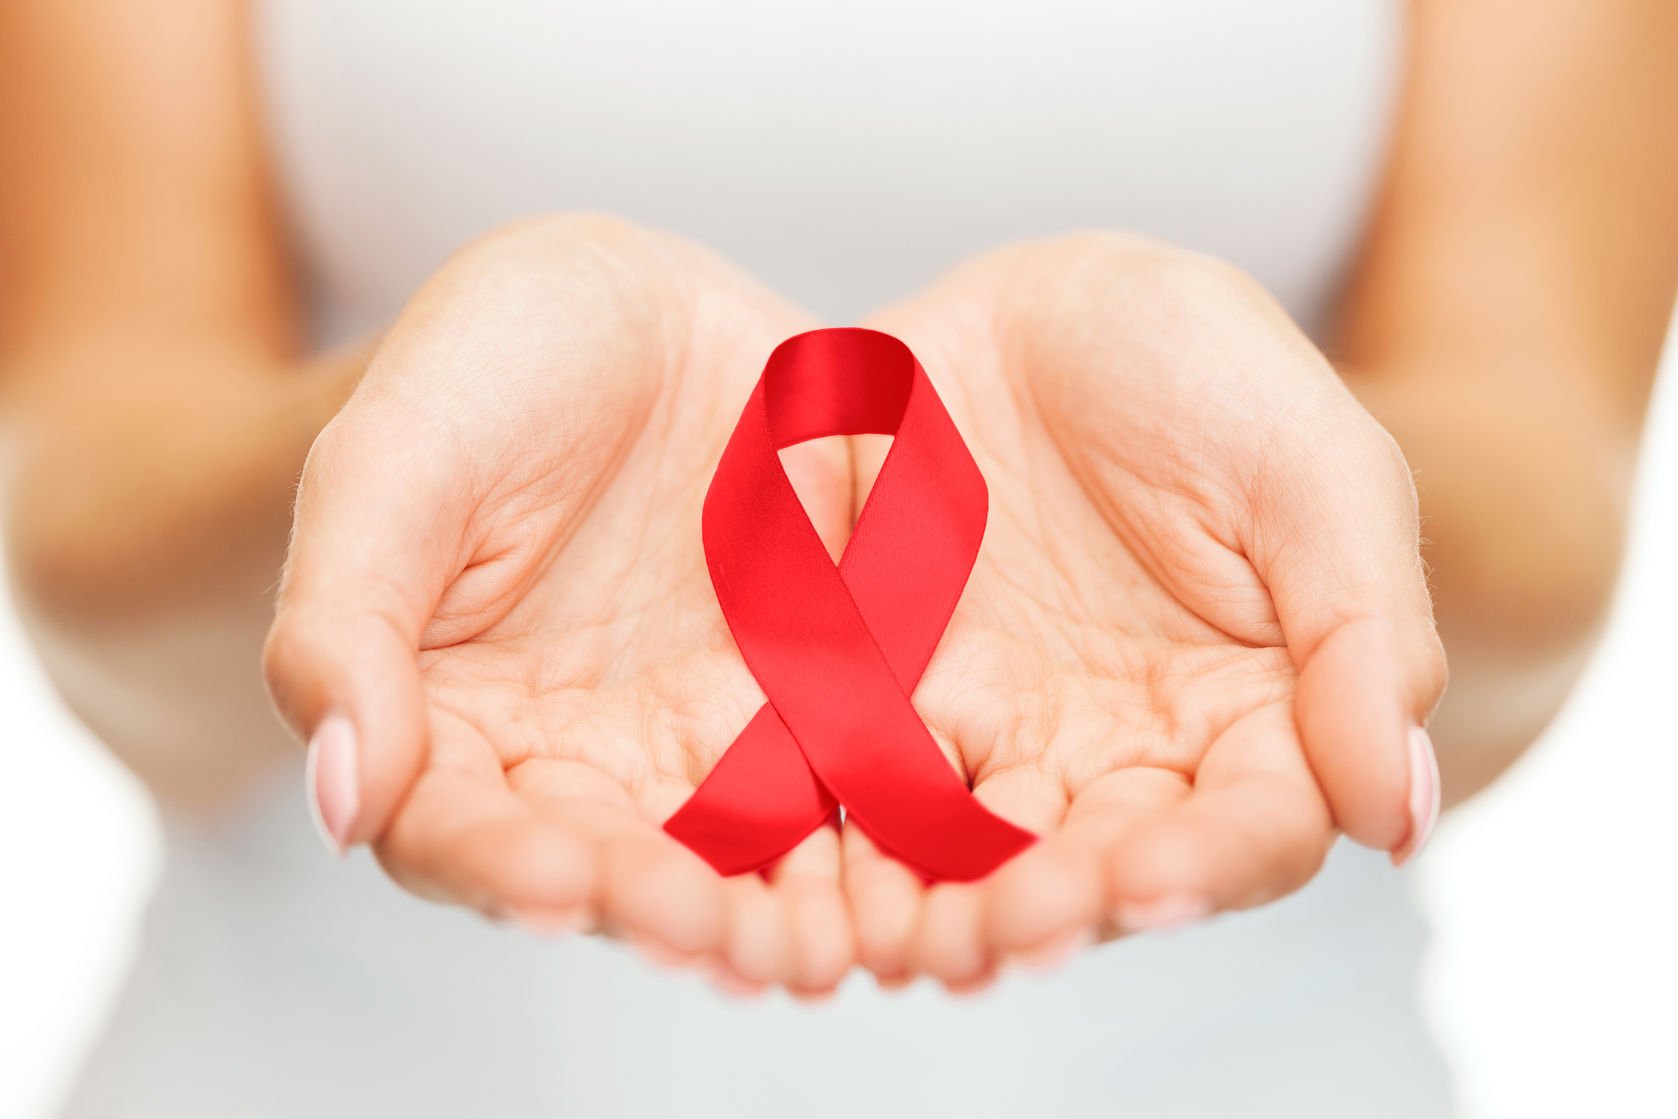 เดินหน้างานเอดส์และโรคติดต่อทางเพศ ยุติปัญหาเอดส์ thaihealth